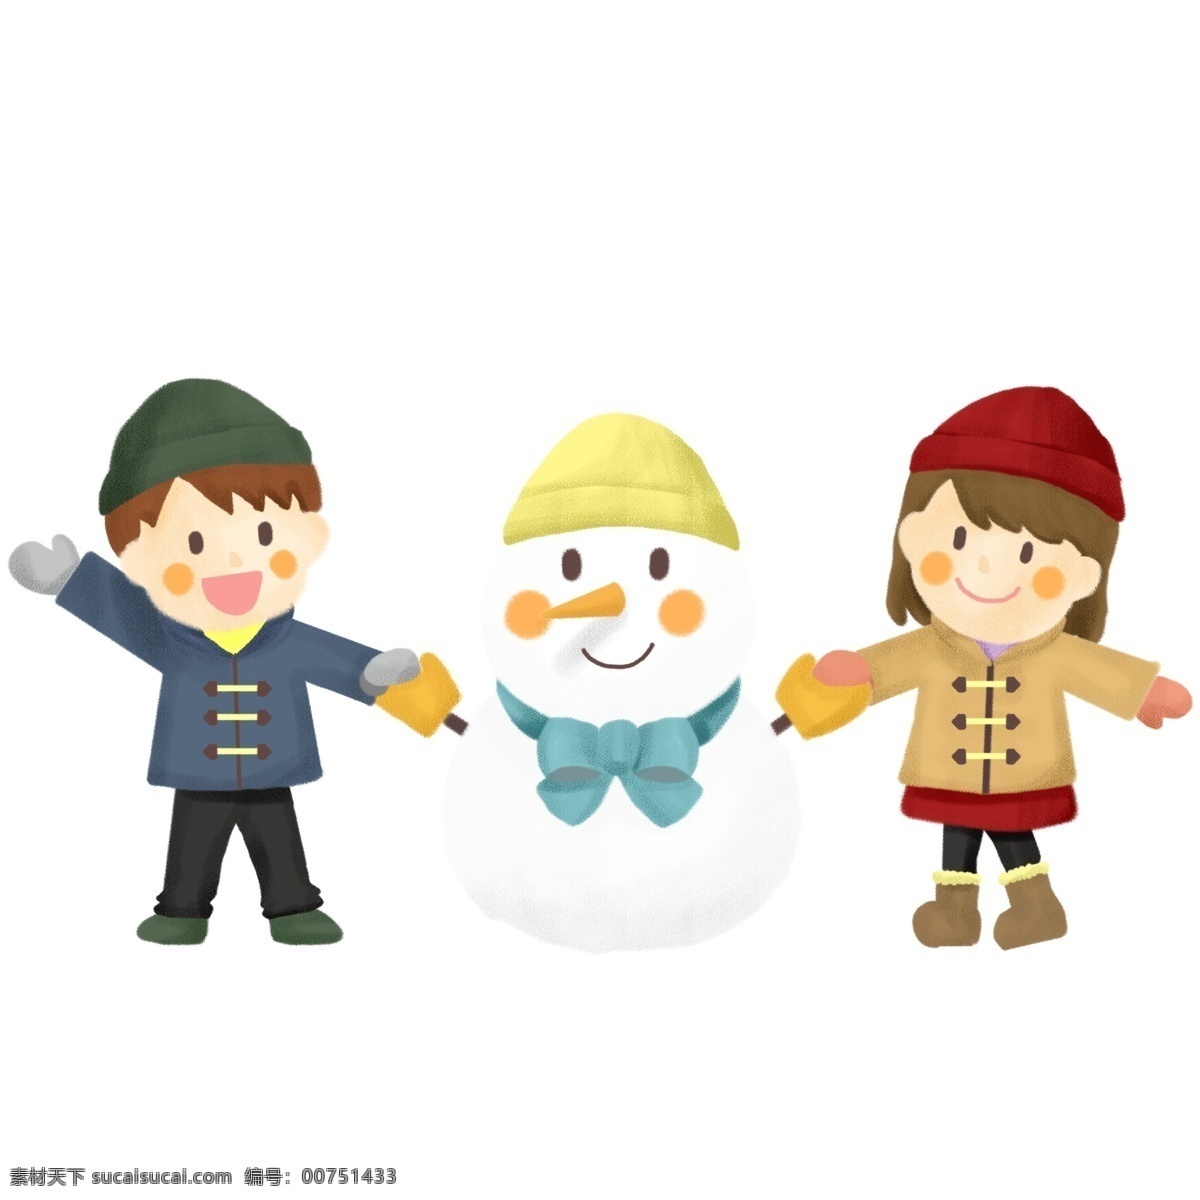 下雪天 堆 雪人 卡通 人物 冬季 男女 可爱 欢乐 雪天 堆雪人 打雪仗 保暖衣物 堆雪人场景 冬季户外活动